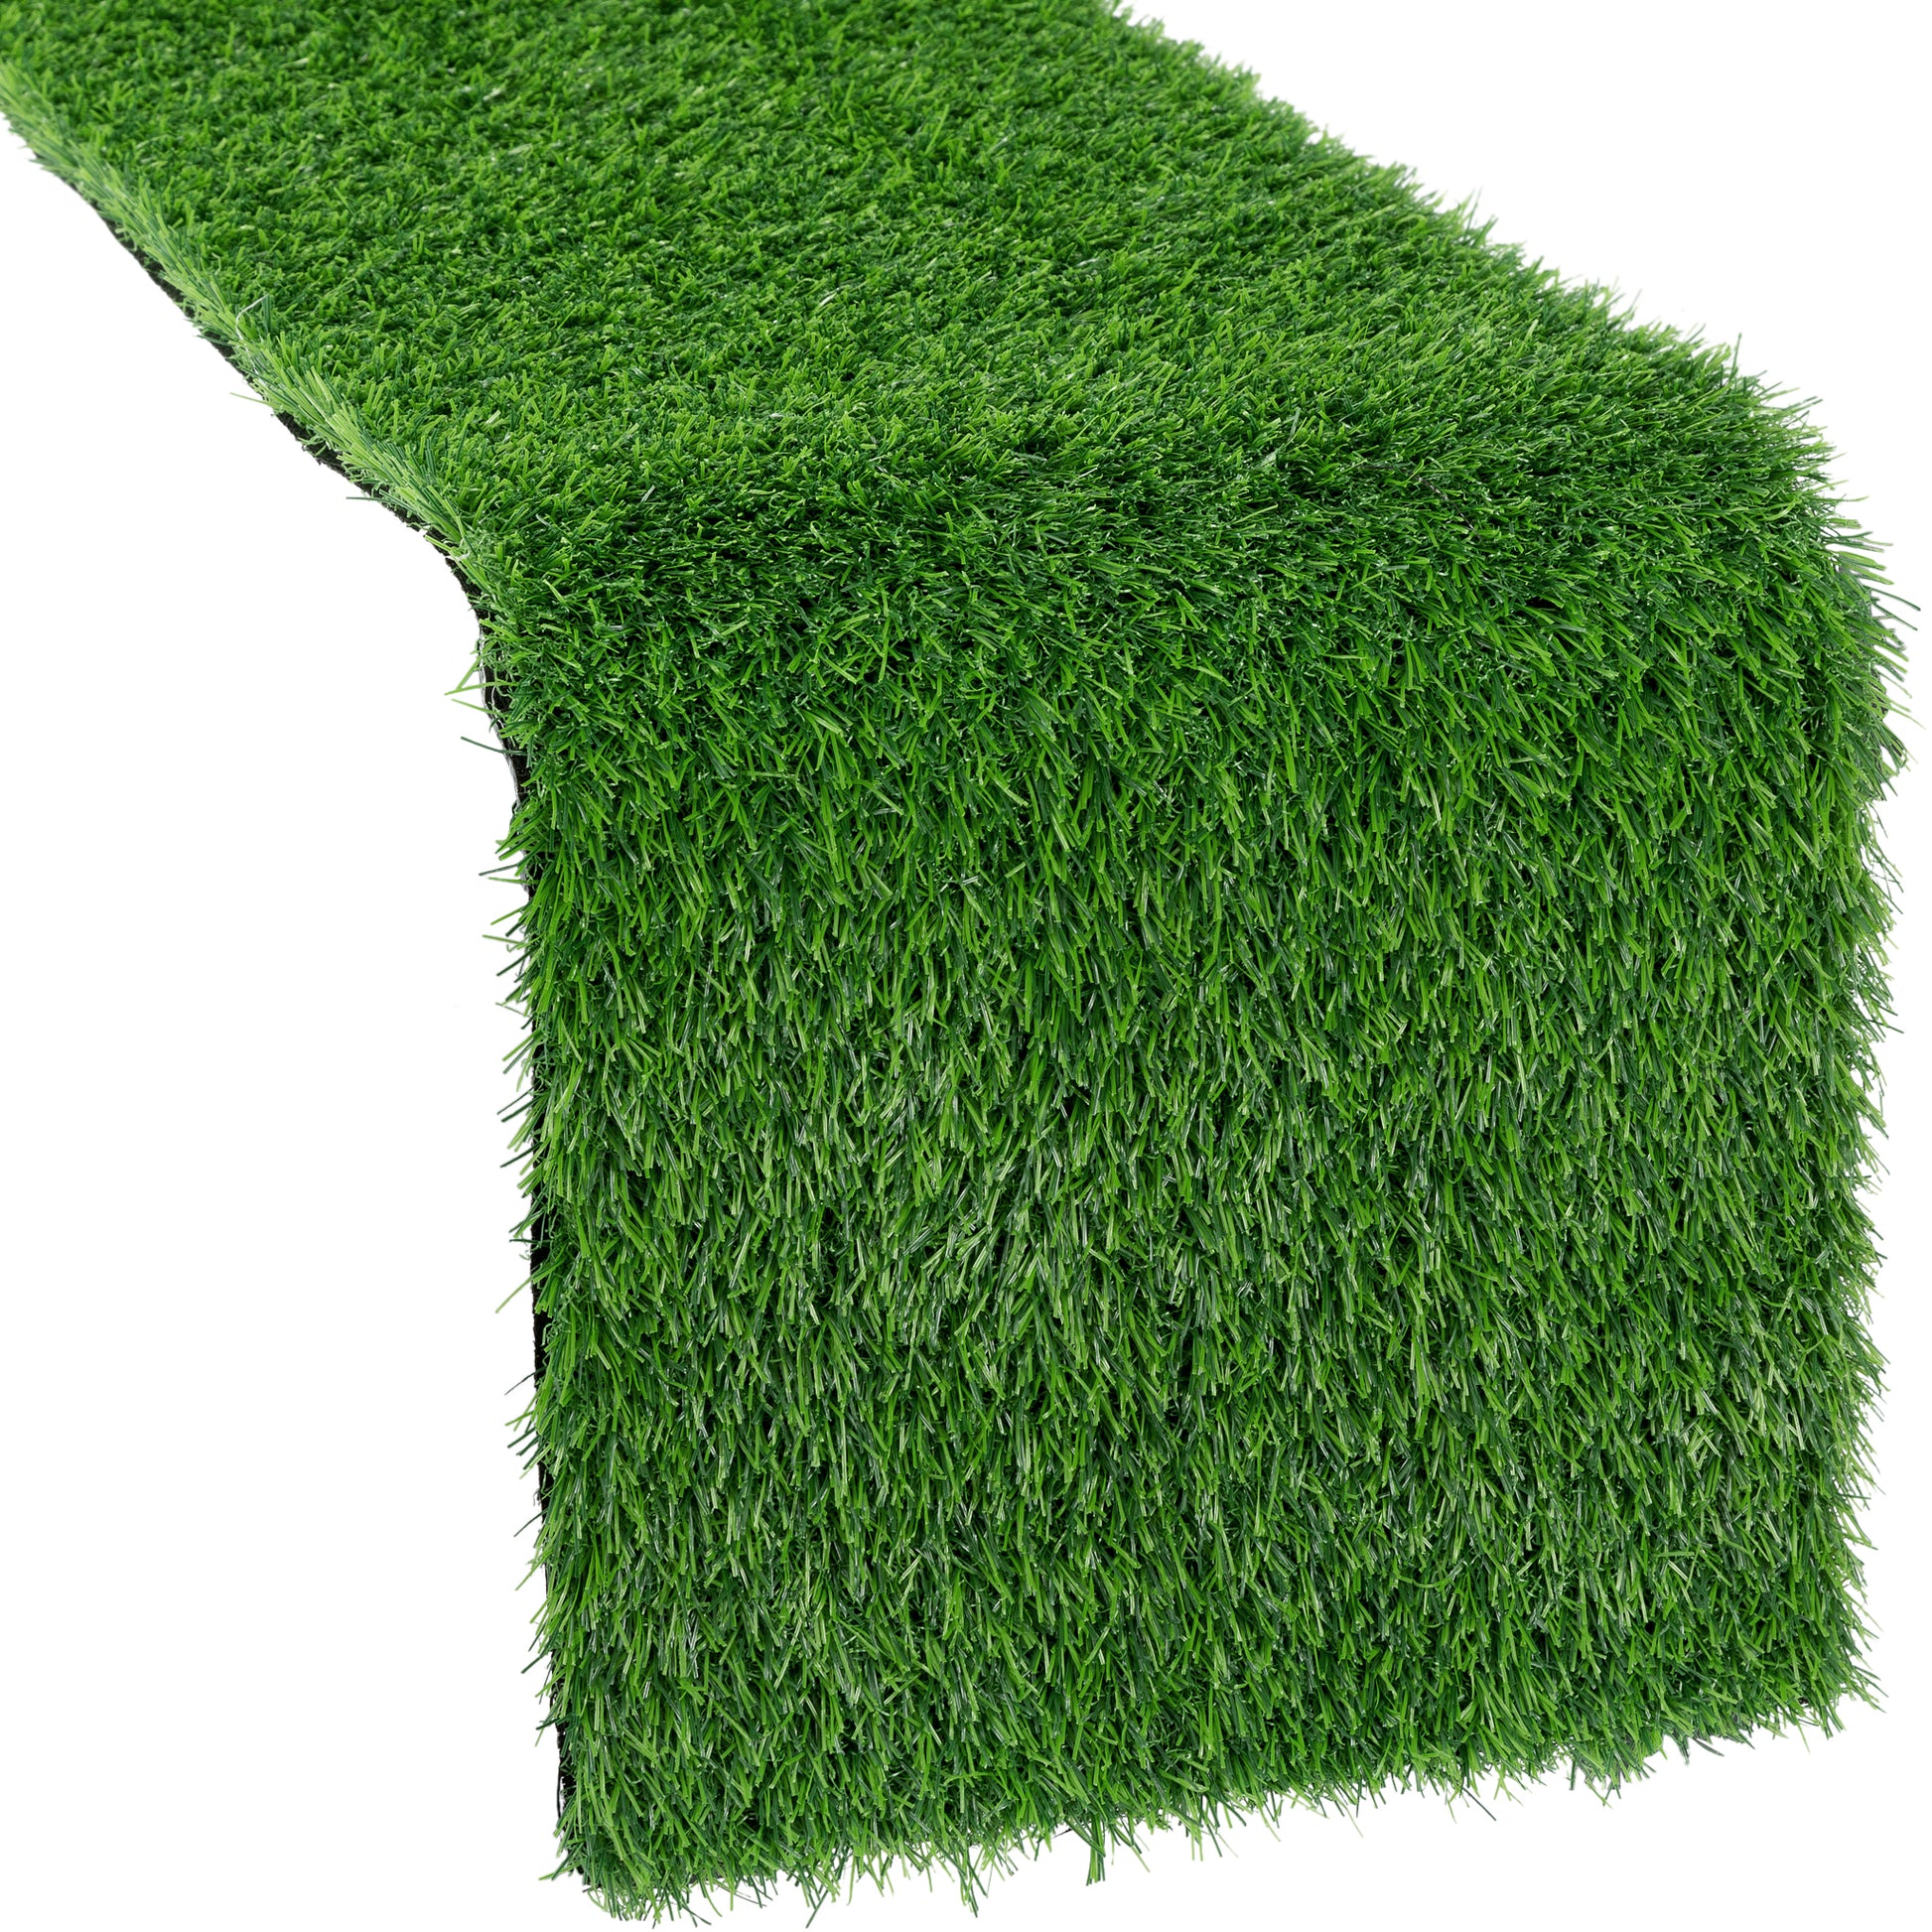 Artificial Grass Table Runner - Green - CV Linens